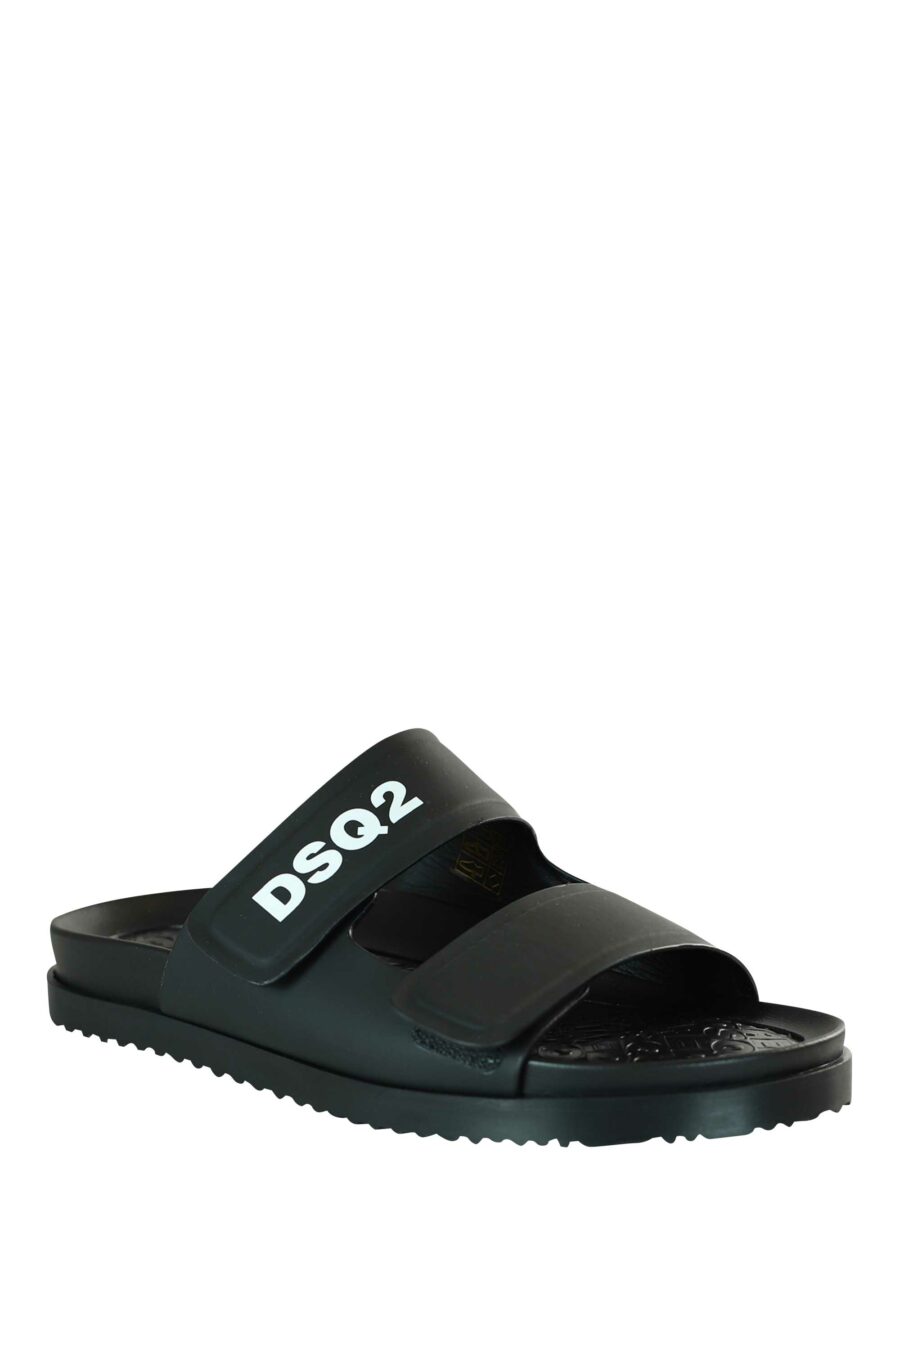 Schwarze Sandalen mit weißem "dsq2" Logo und Klettverschluss - 8055777203200 2